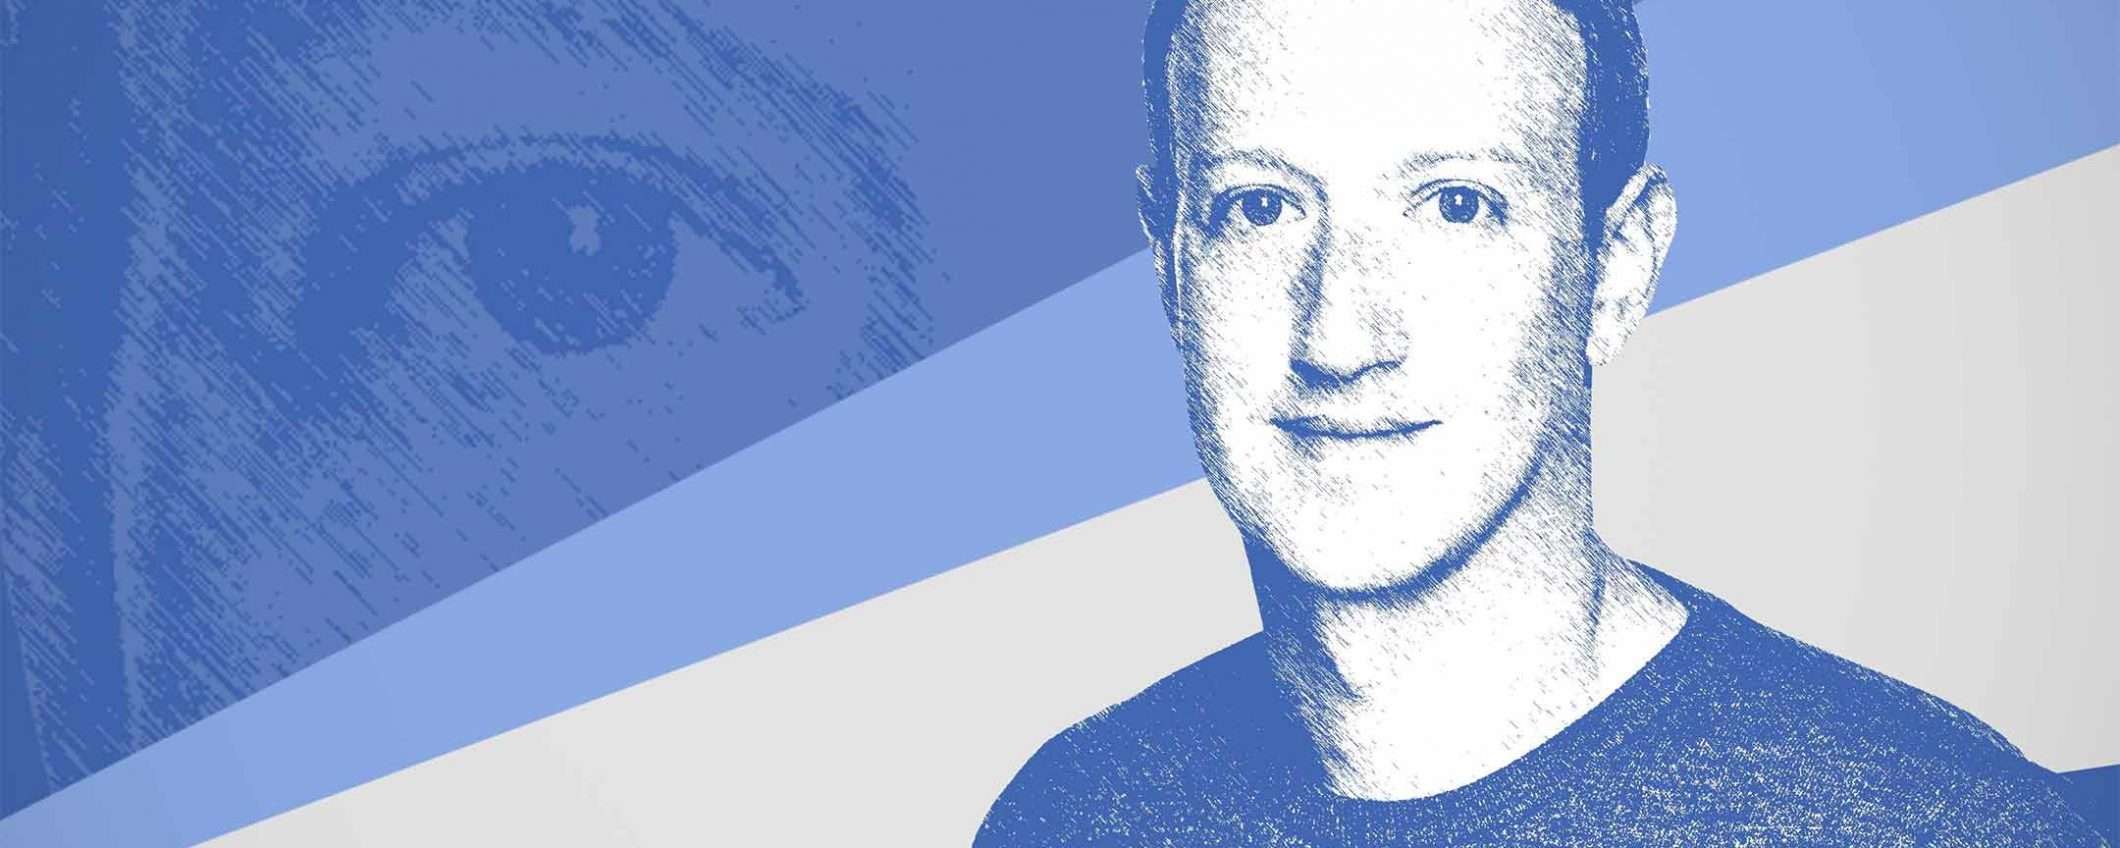 Facebook pronta a cambiare nome, per il metaverso